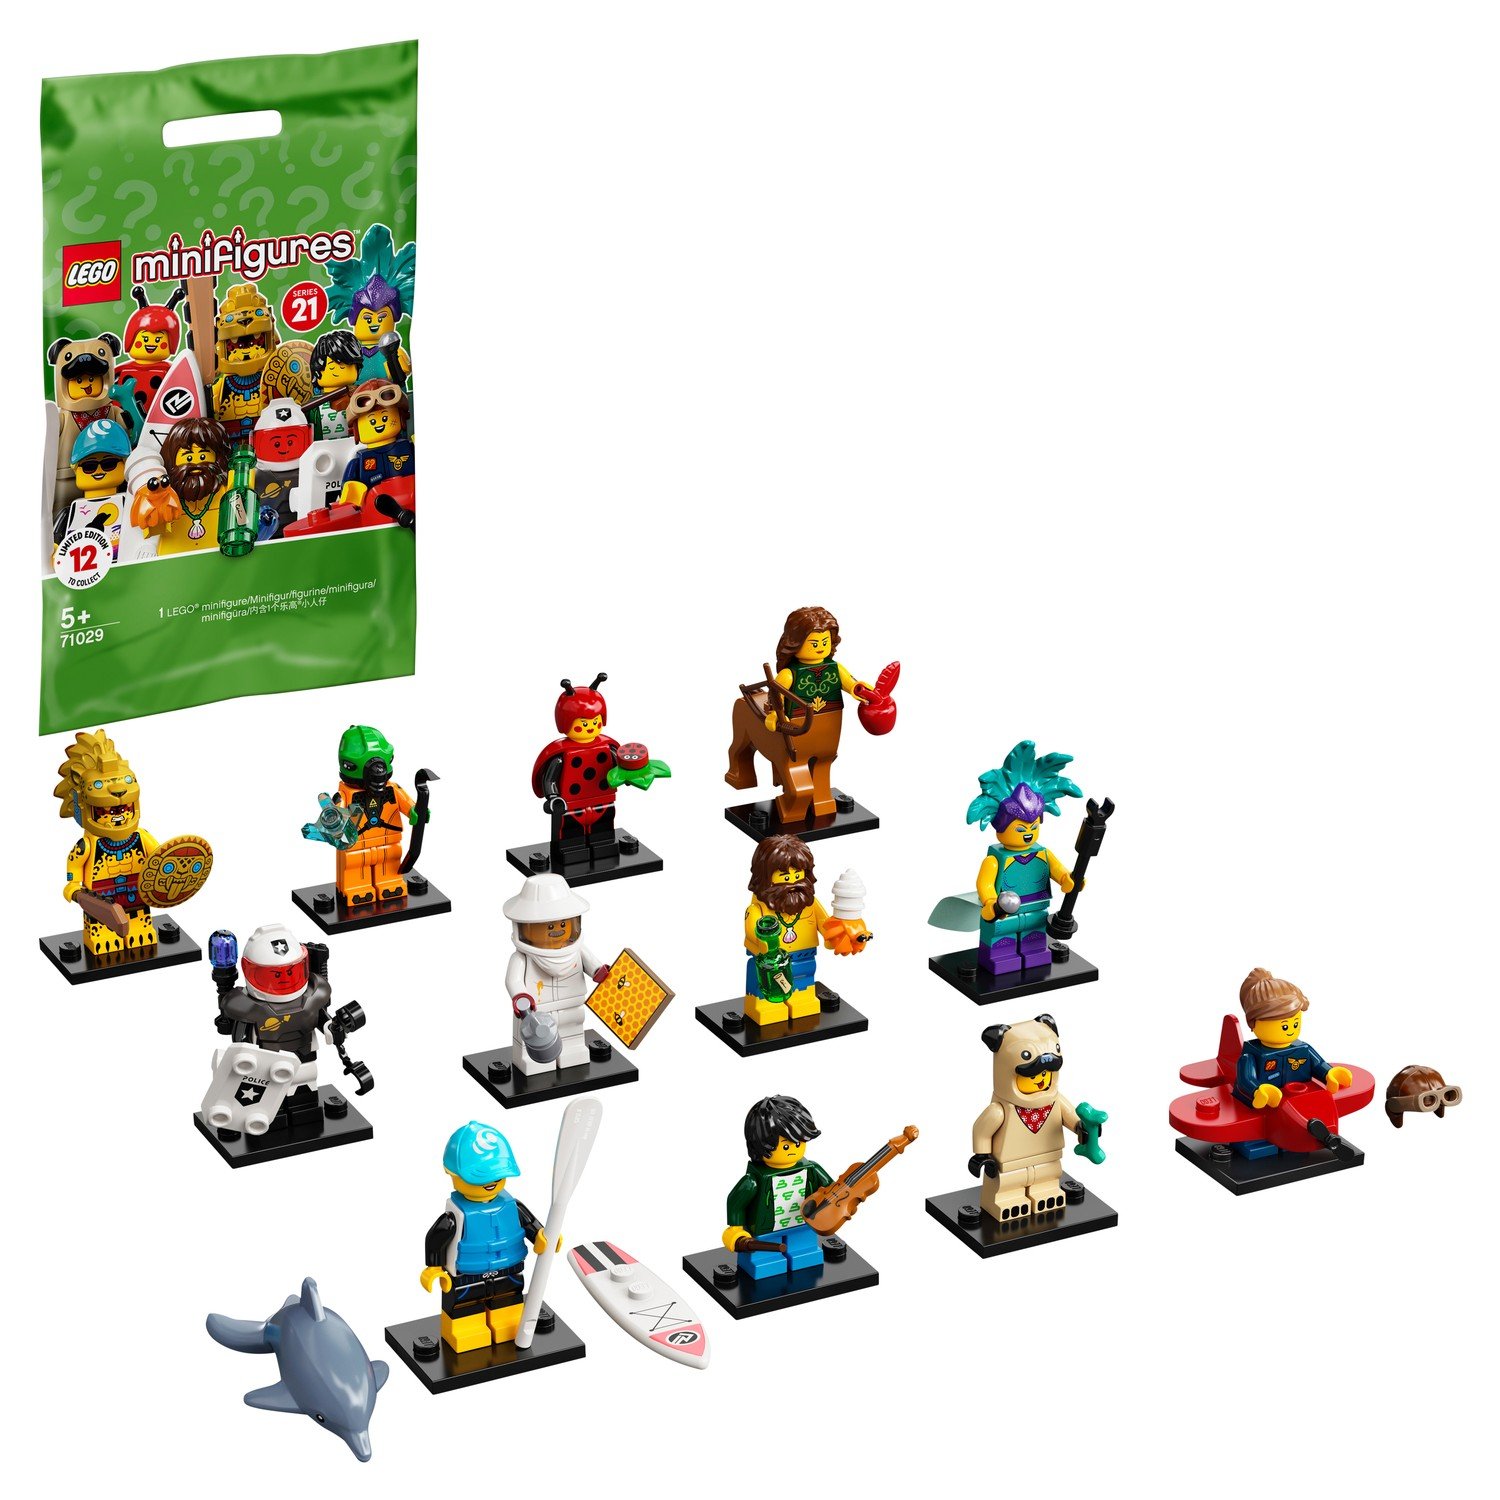 Конструктор LEGO Collectable Minifigures 71029 Серия 21